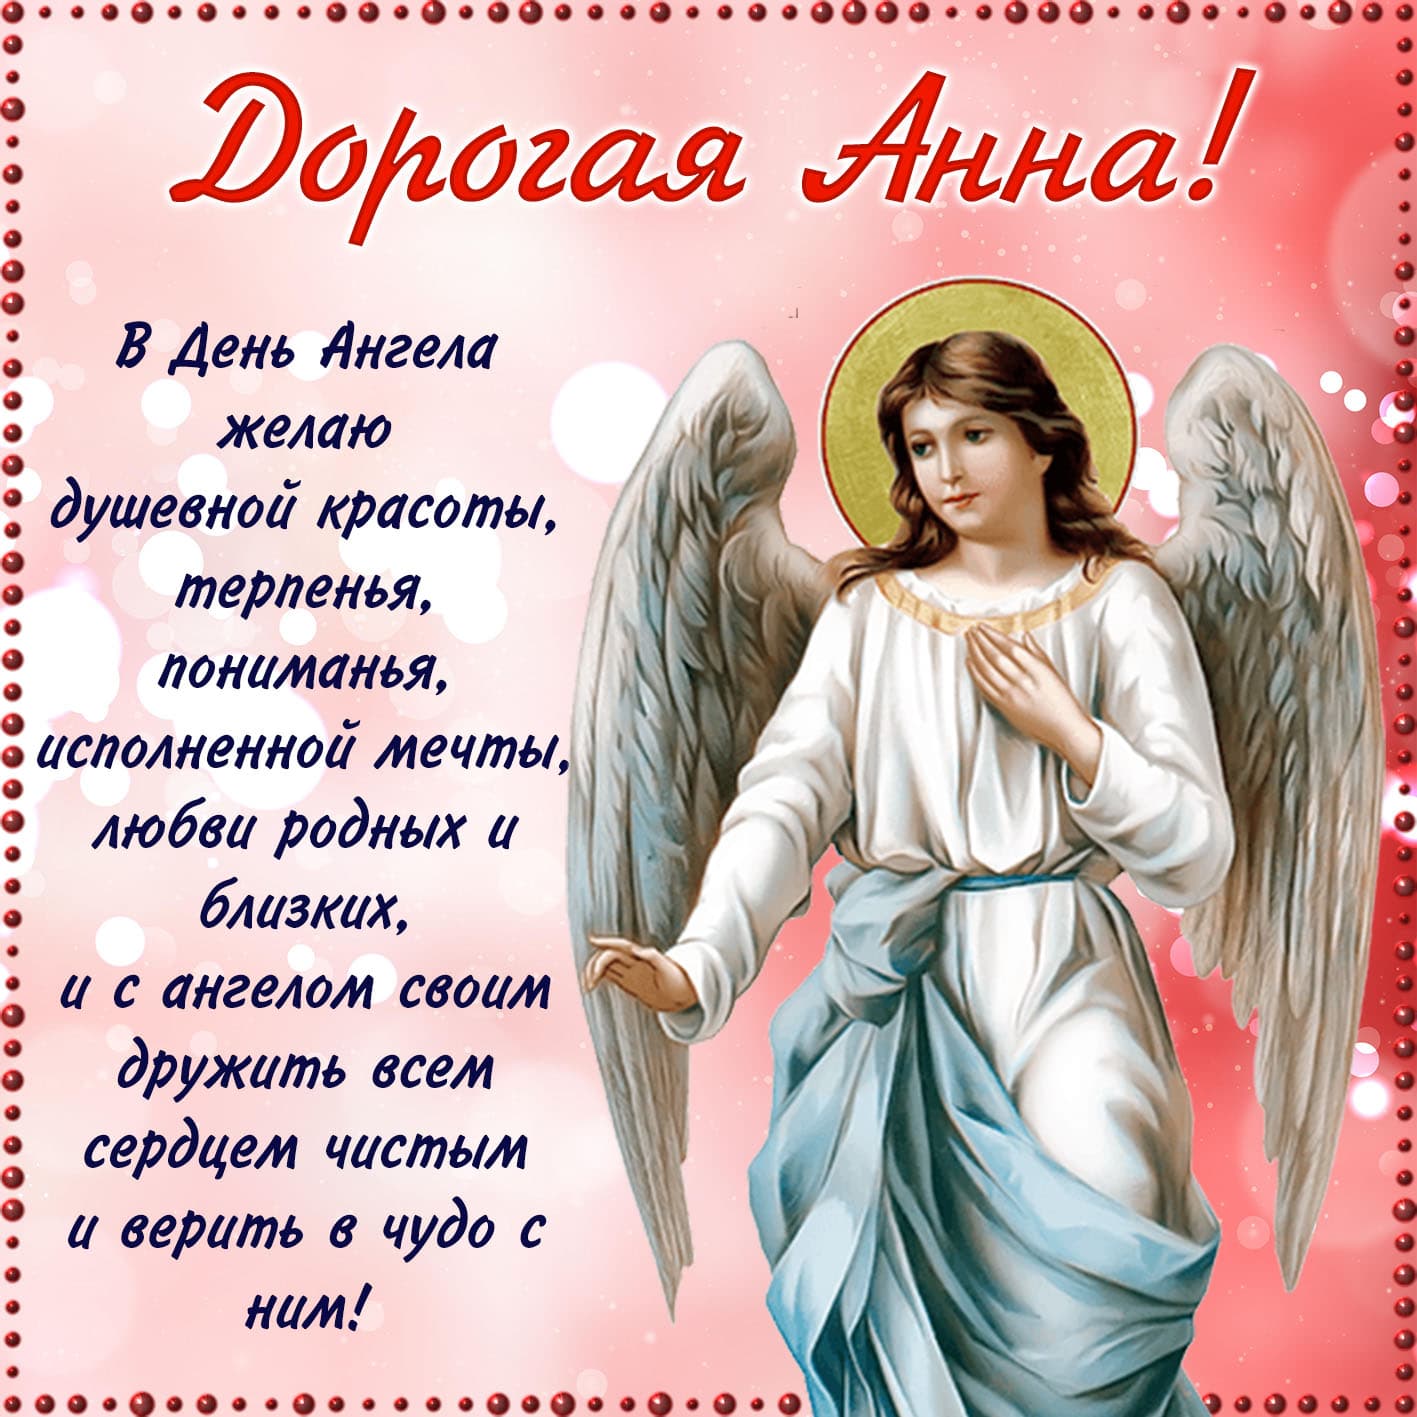 Картинка православная дорогой анне с пожеланием в день ангела